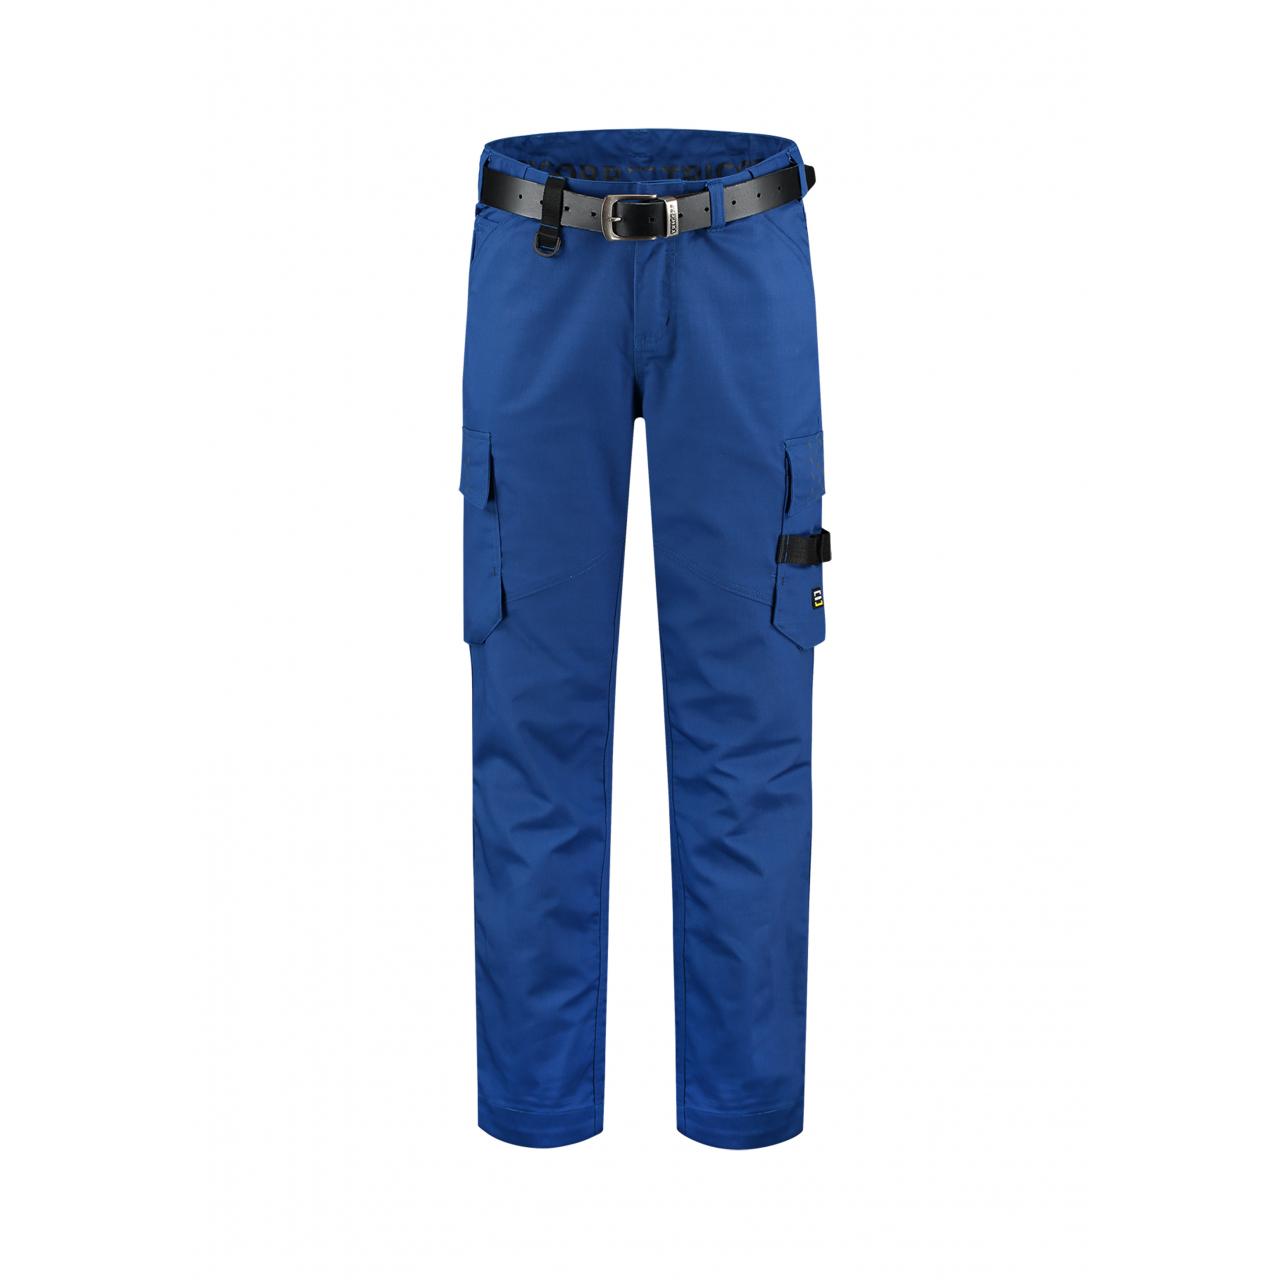 Pracovní kalhoty unisex Tricorp Work Pants Twill - modré, 48